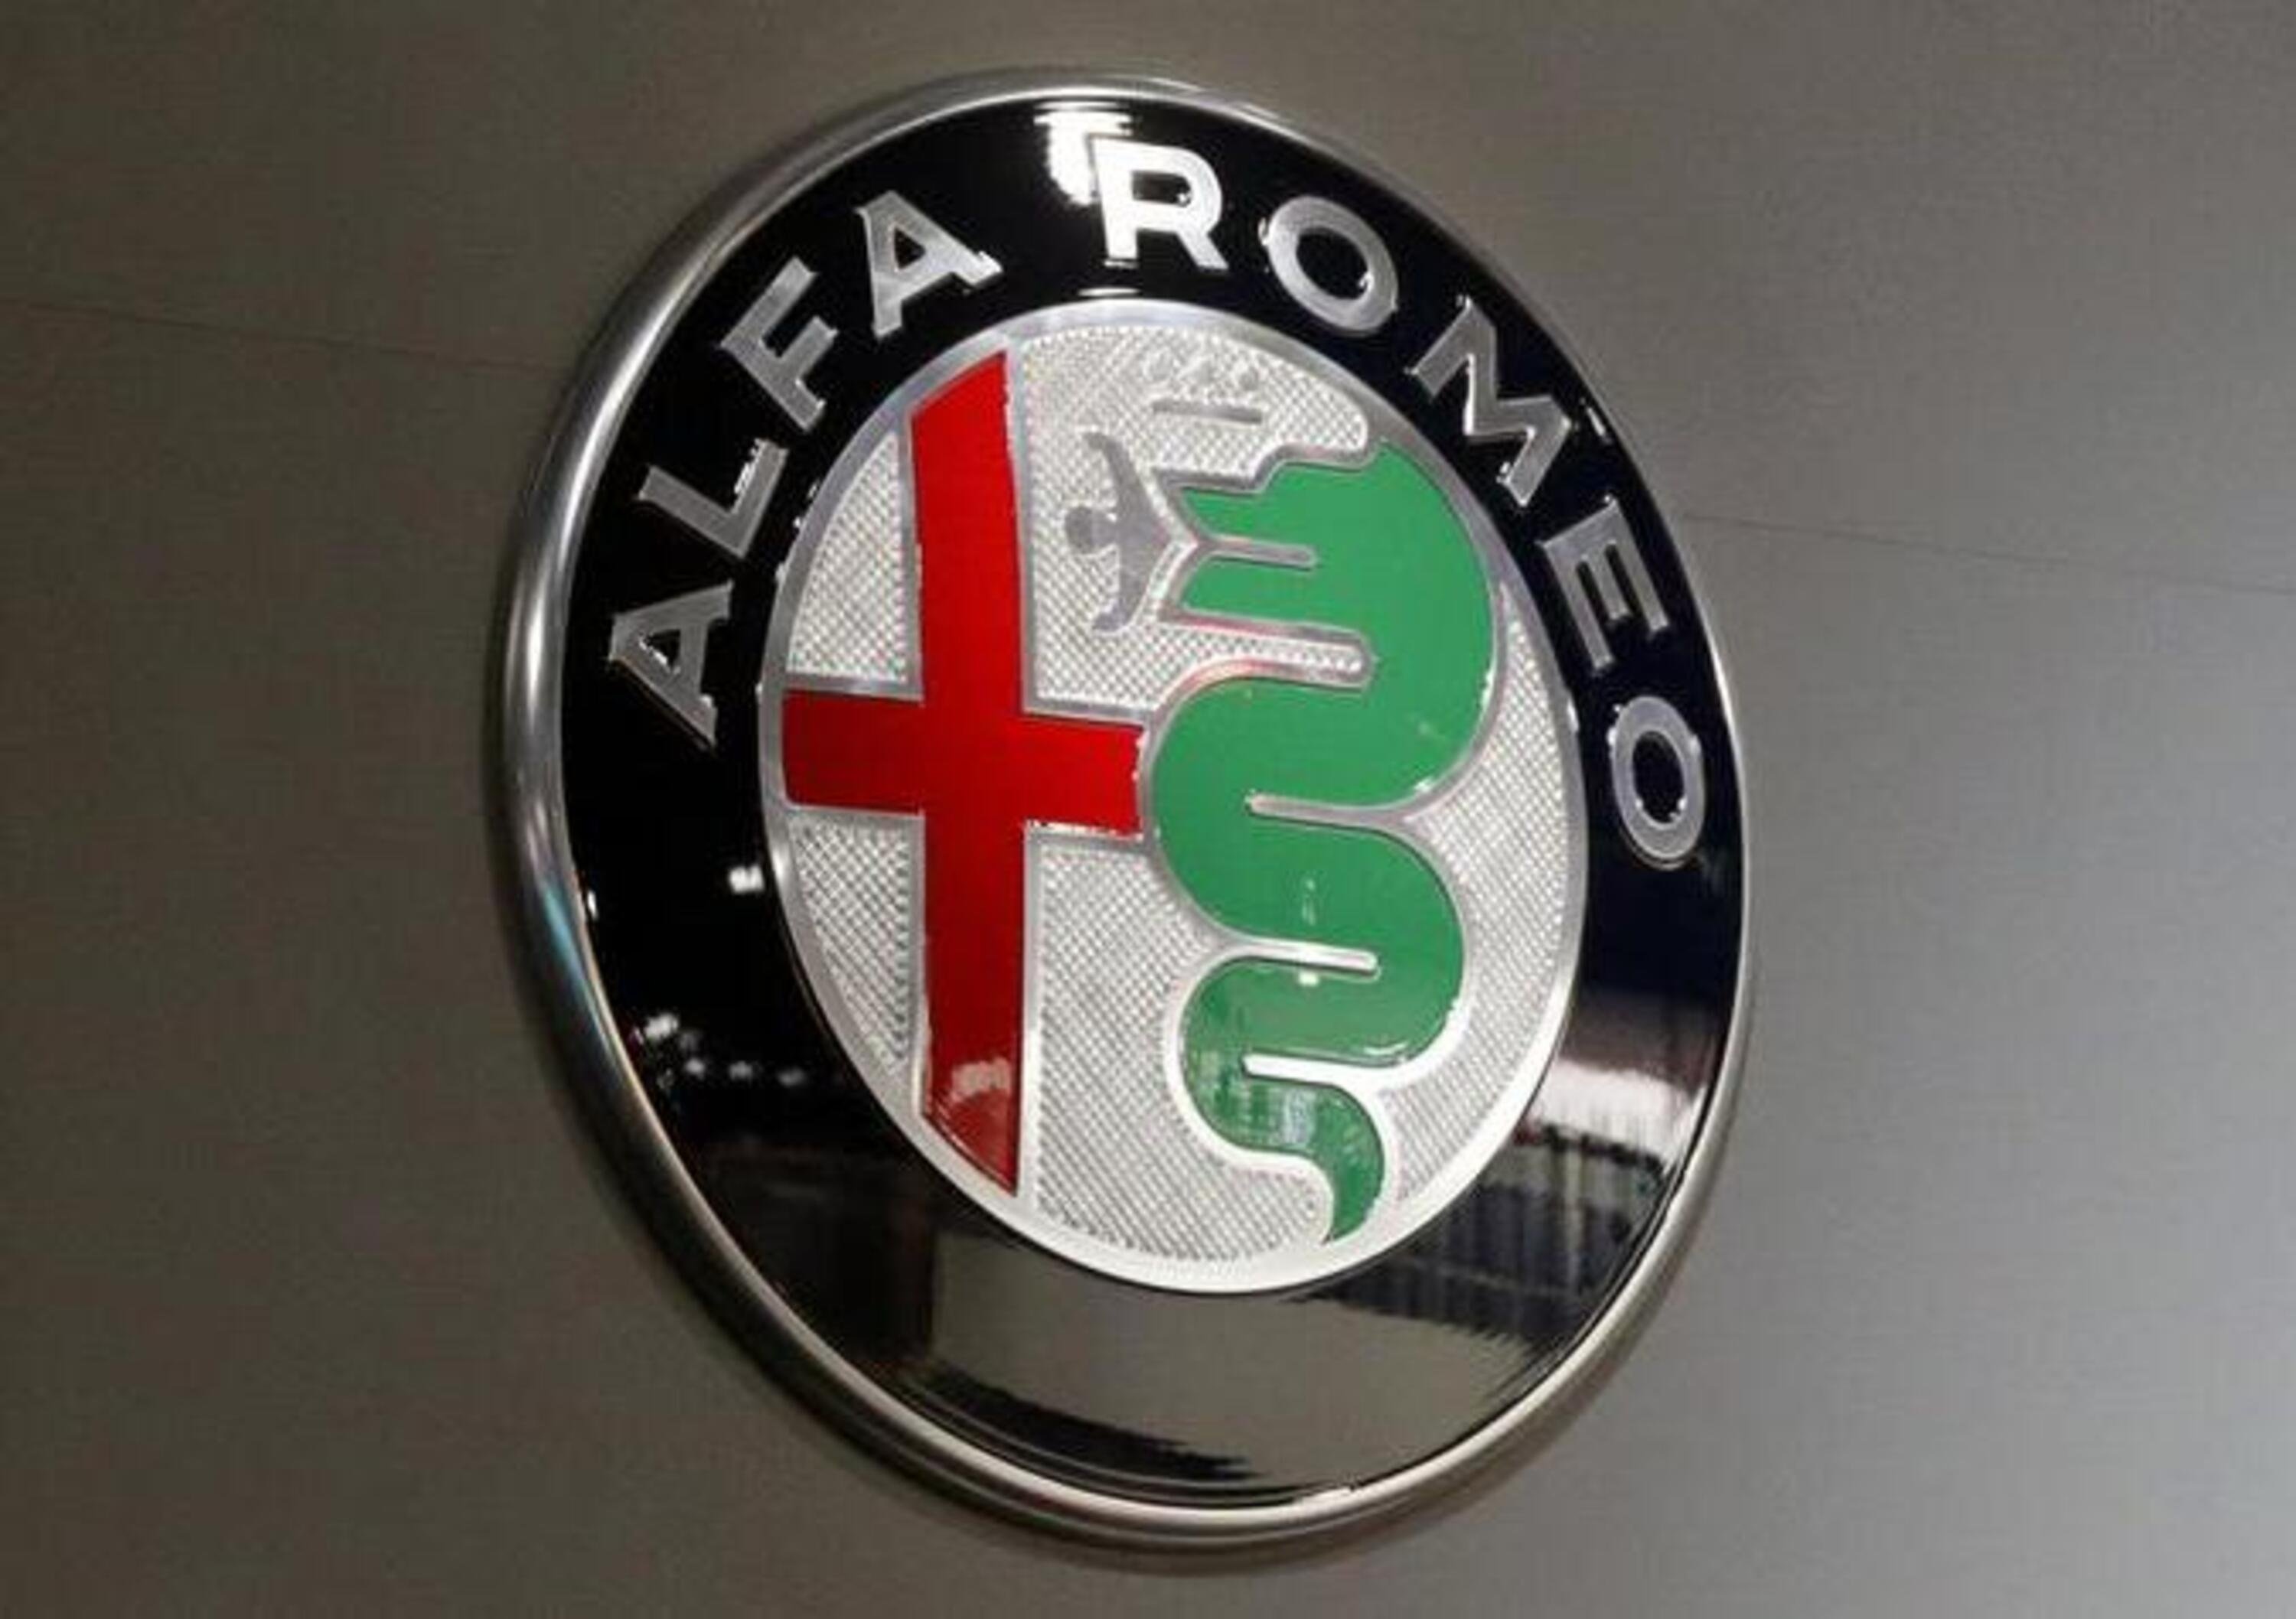 SUV Alfa Romeo ibrido e connesso in arrivo nel 2020